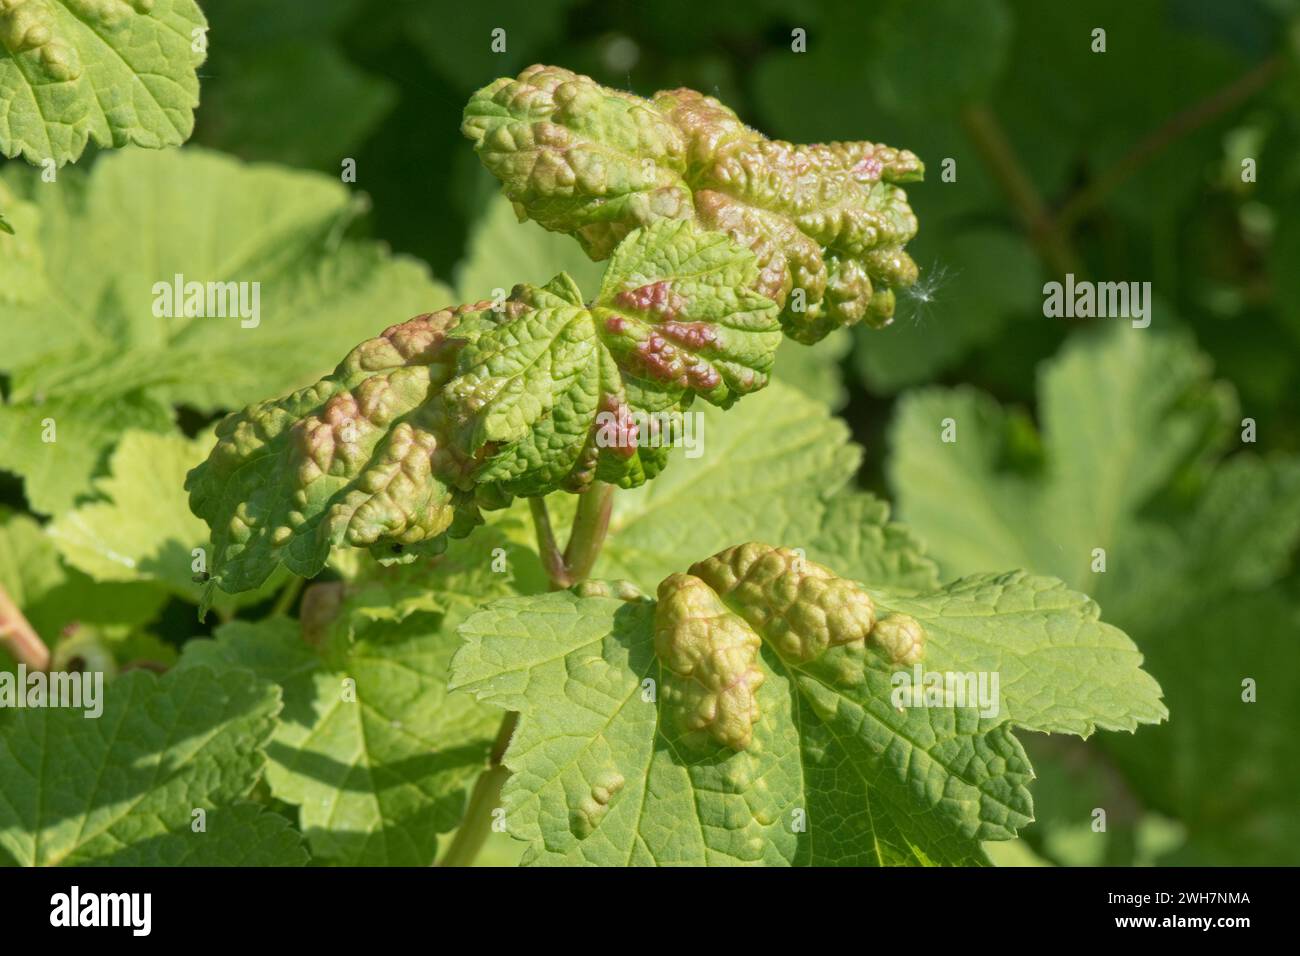 Puceron de groseille (Cryptomyzus ribis) cloques bombées de couleur verte ou rouge sur les feuilles d'un arbuste de groseille rouge (Ribes rubrum), Berkshire, mai Banque D'Images